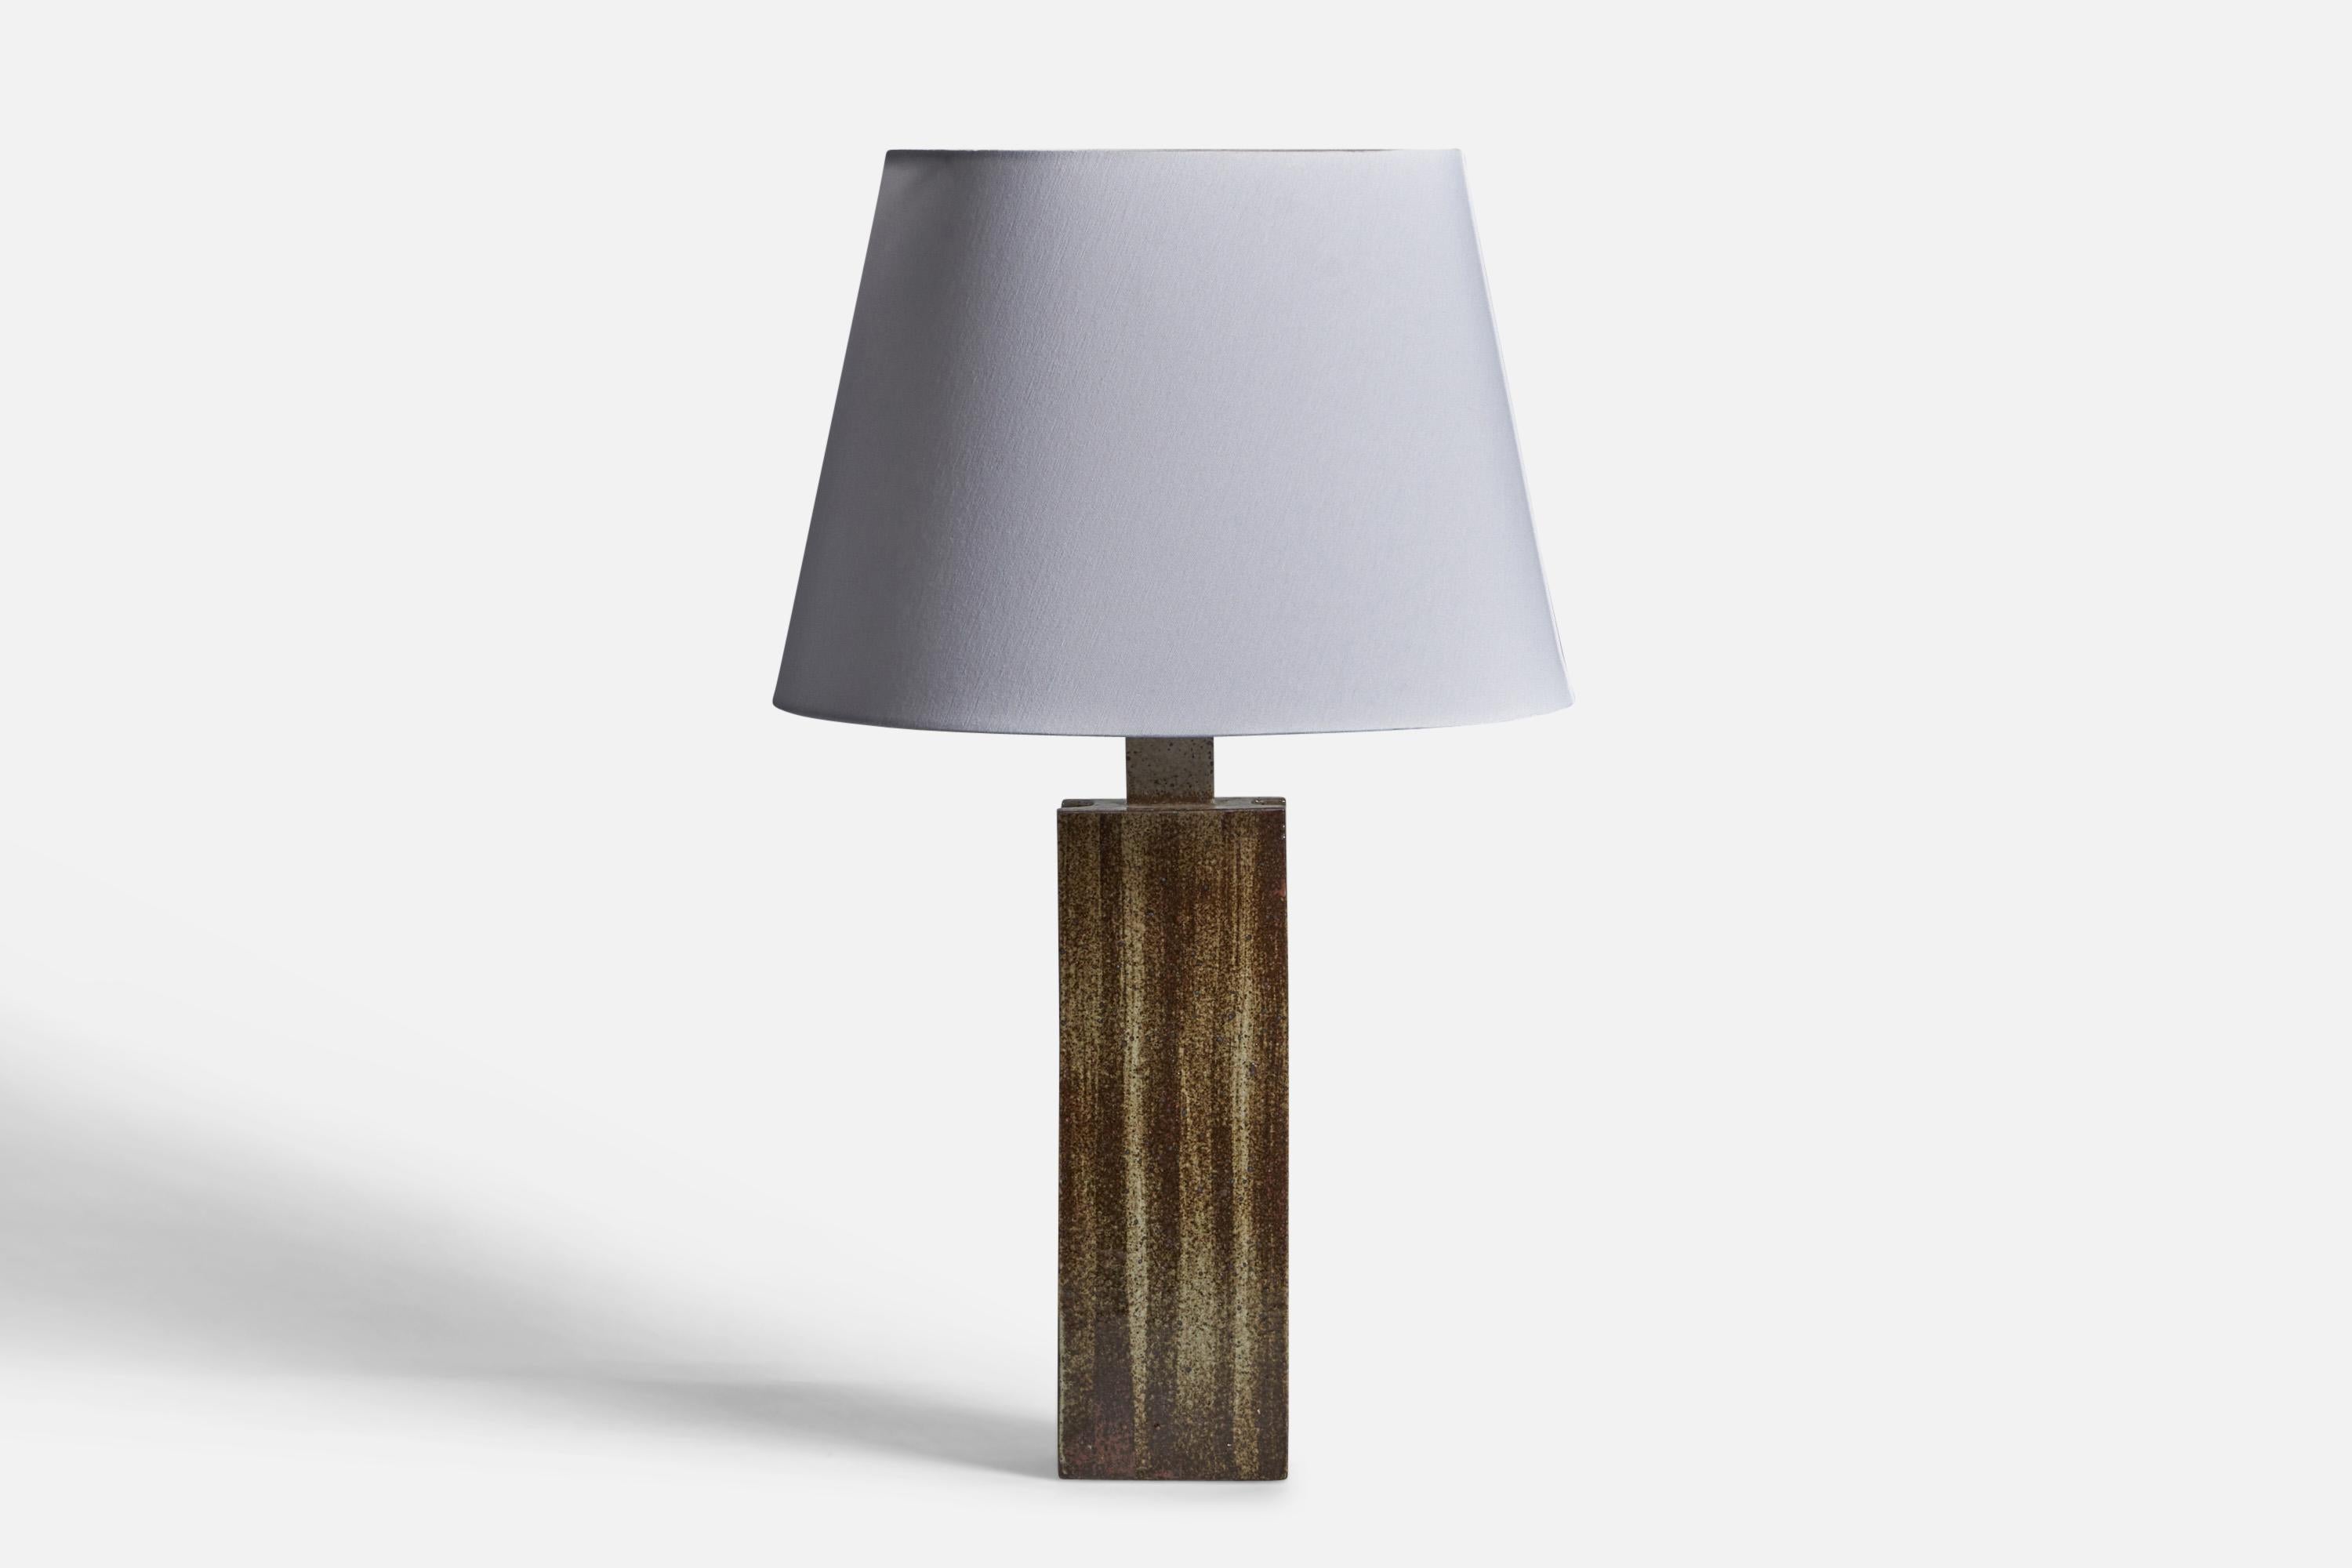 Lampe de table en grès émaillé brun et gris, conçue par Per & Annelise Linneman-Schmidt et produite par Palshus, Sengeløse, Danemark, C.C.

Dimensions de la lampe (pouces) : 17.5